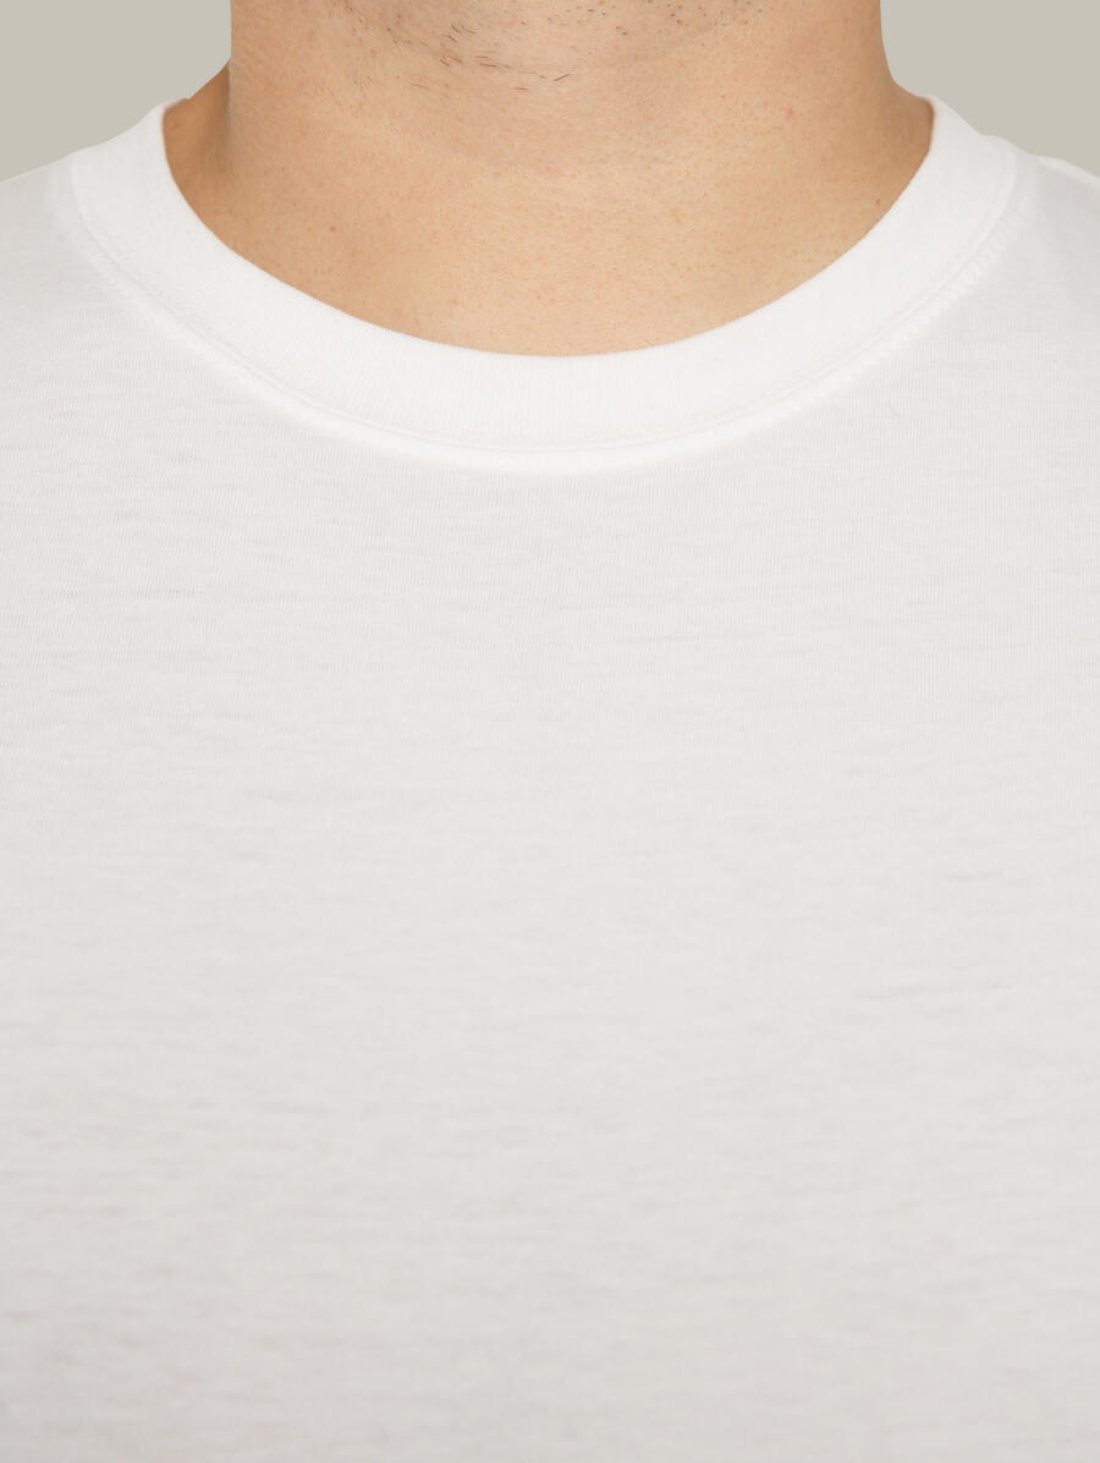 Чоловіча футболка, біла з принтом аватара Hopper 002